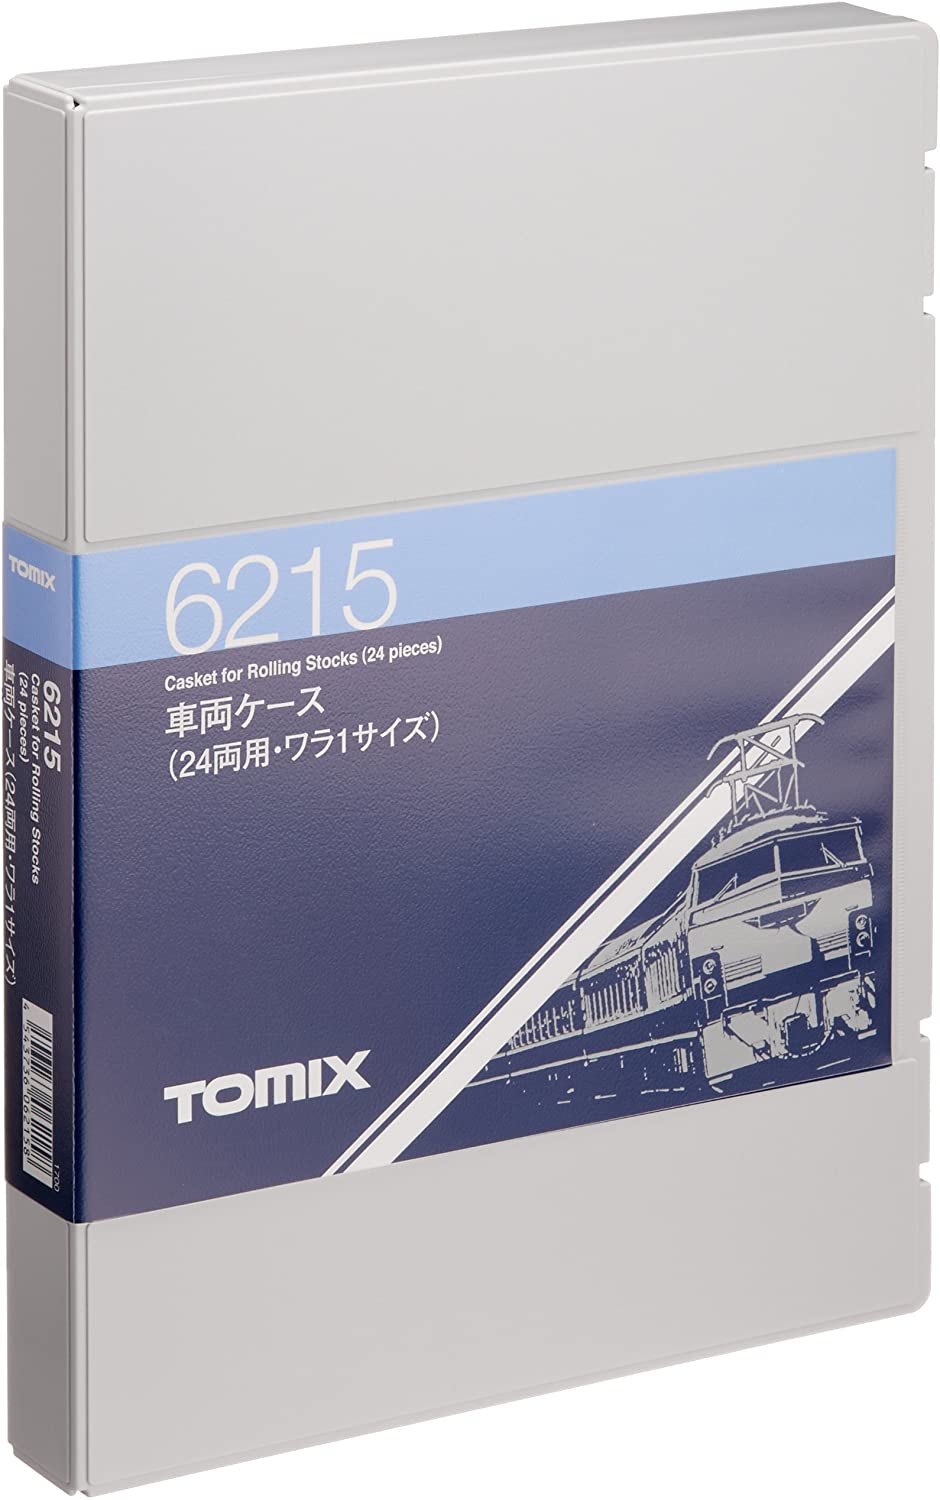 トミーテック TOMIX 車両ケース(24両用・ワラ1サイズ) #6215